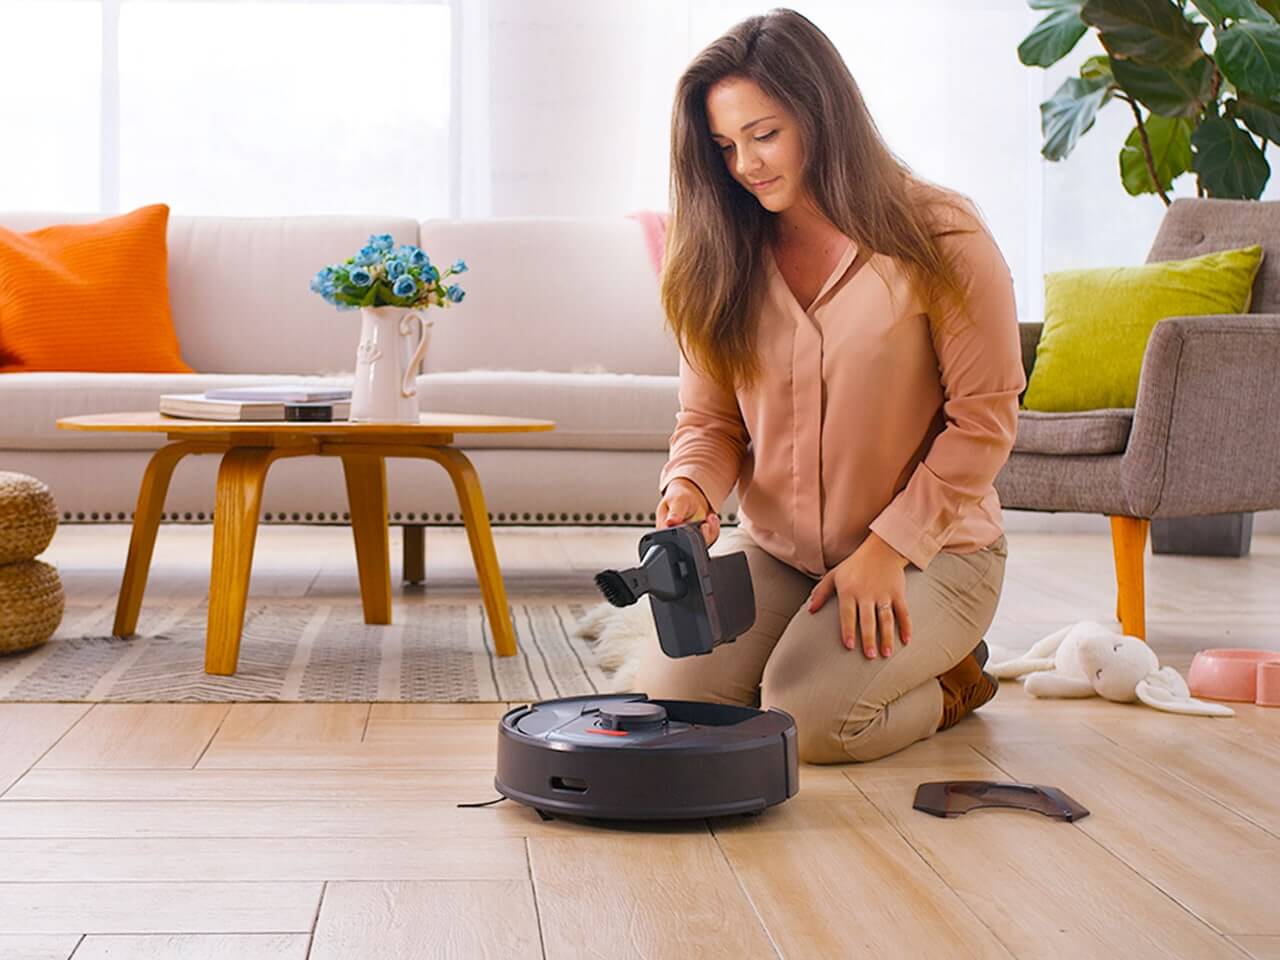 Робот пылесос enchen vacuum cleaner. Робот пылесос Tab Smart Vacuum Cleaner. Робот пылесос Клиан робот. Пылесос в интерьере. Женщина и робот пылесос.